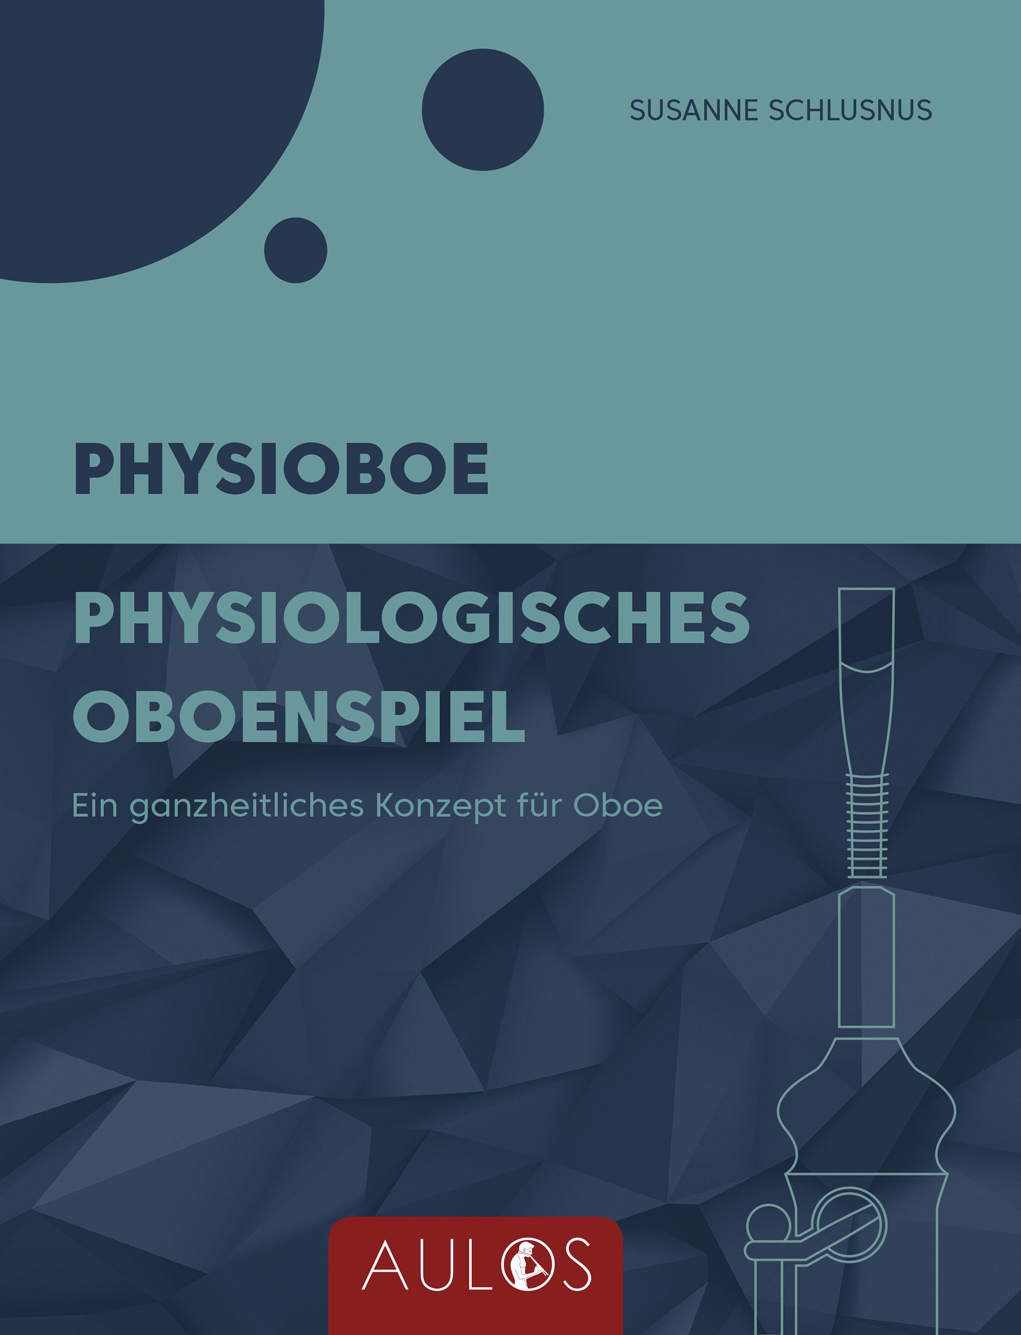 S. Schlusnus: Pysioboe -  Physiologische<br>Oboenspiel - Fachbuch - ca. 400 Seiten